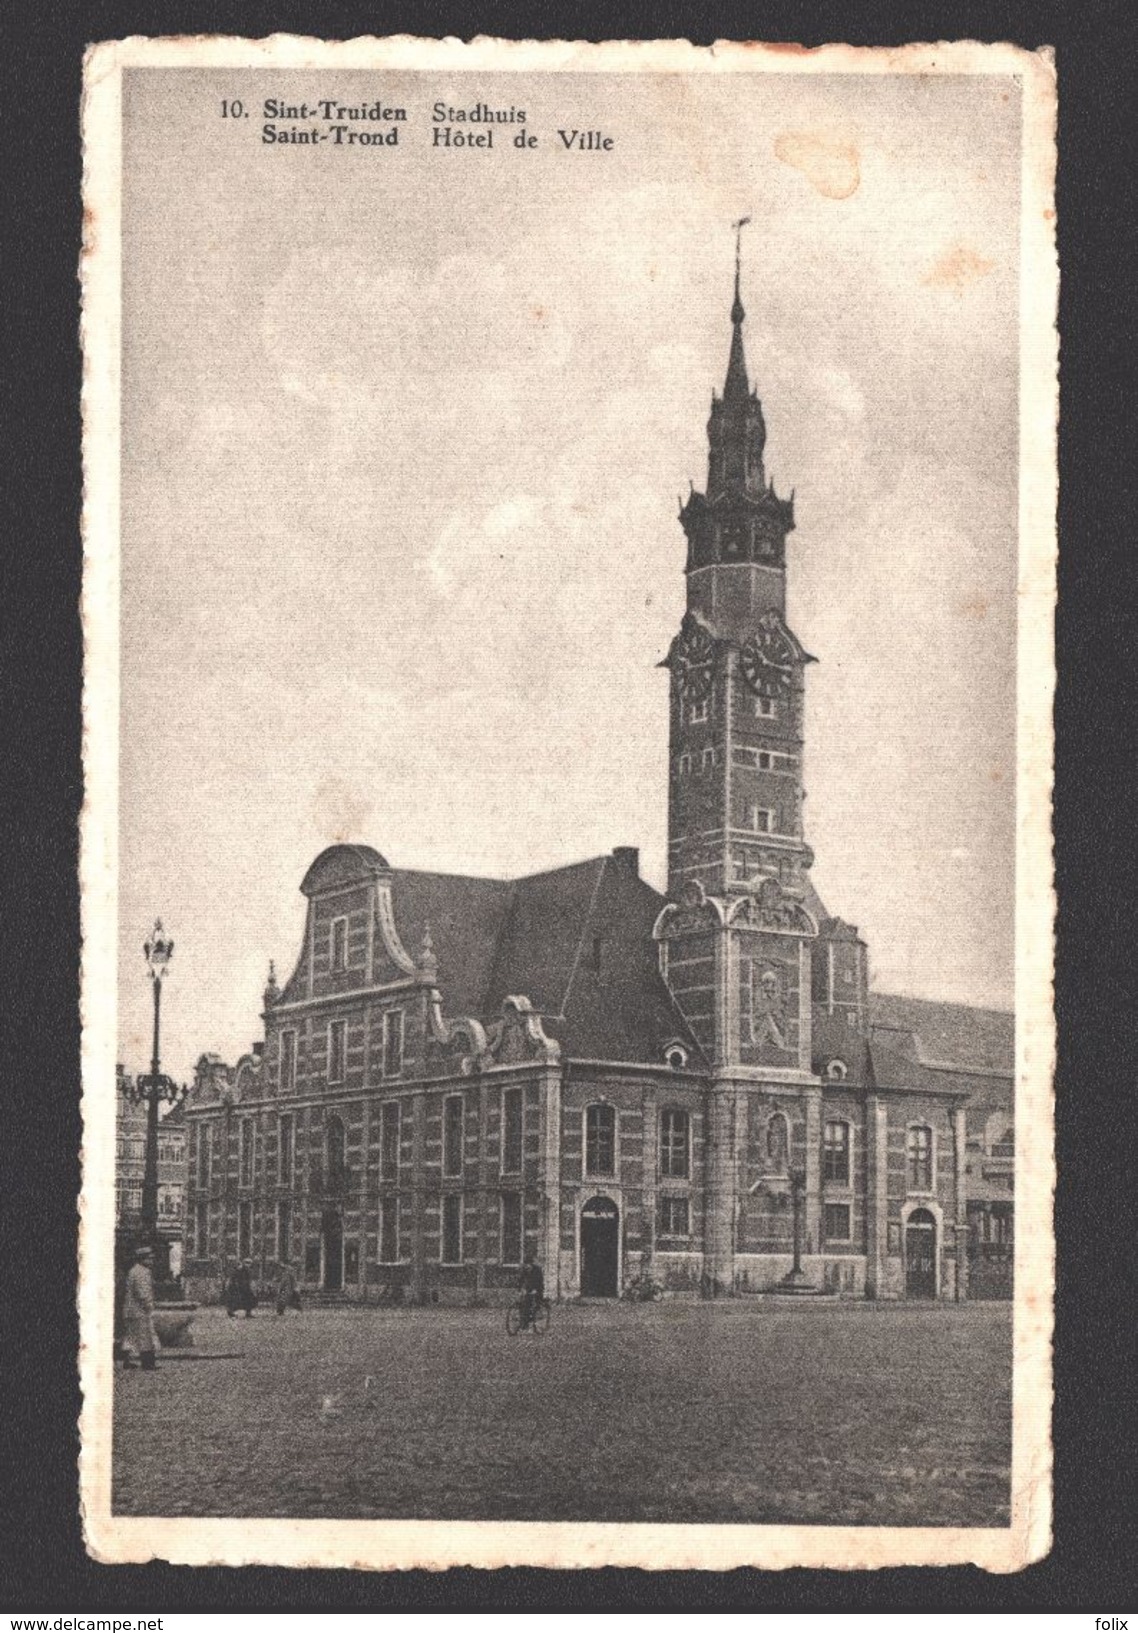 Sint-Truiden - Stadhuis - 1950 - Sint-Truiden